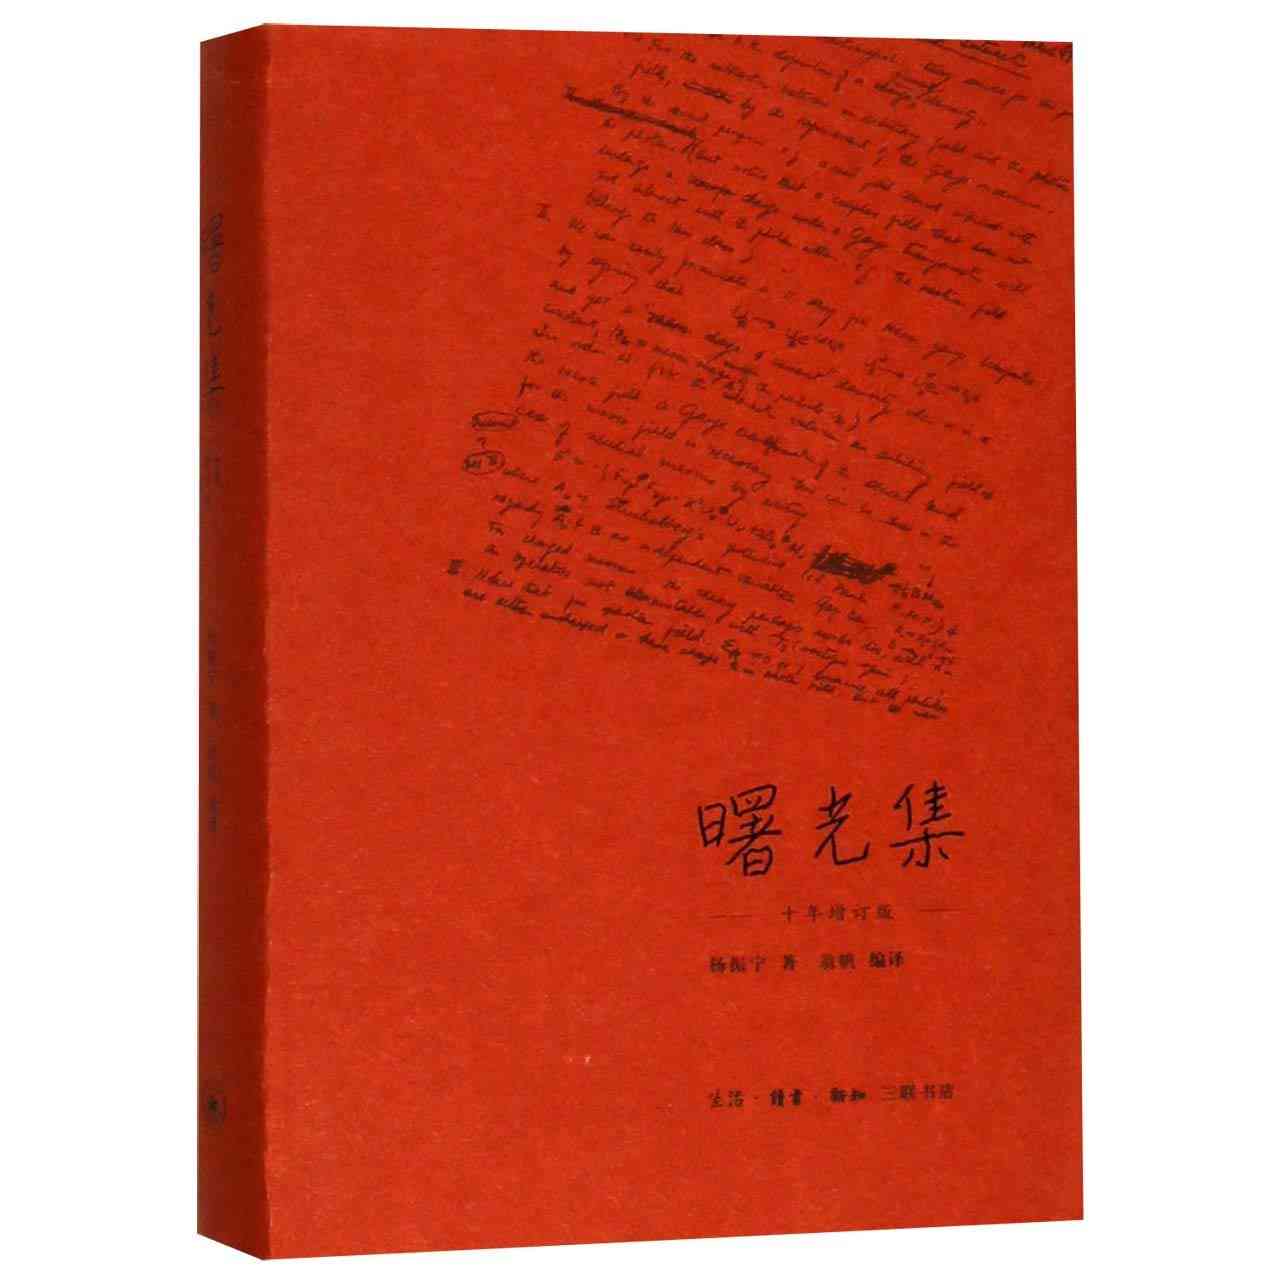 Essays af yang, chen-ning bog